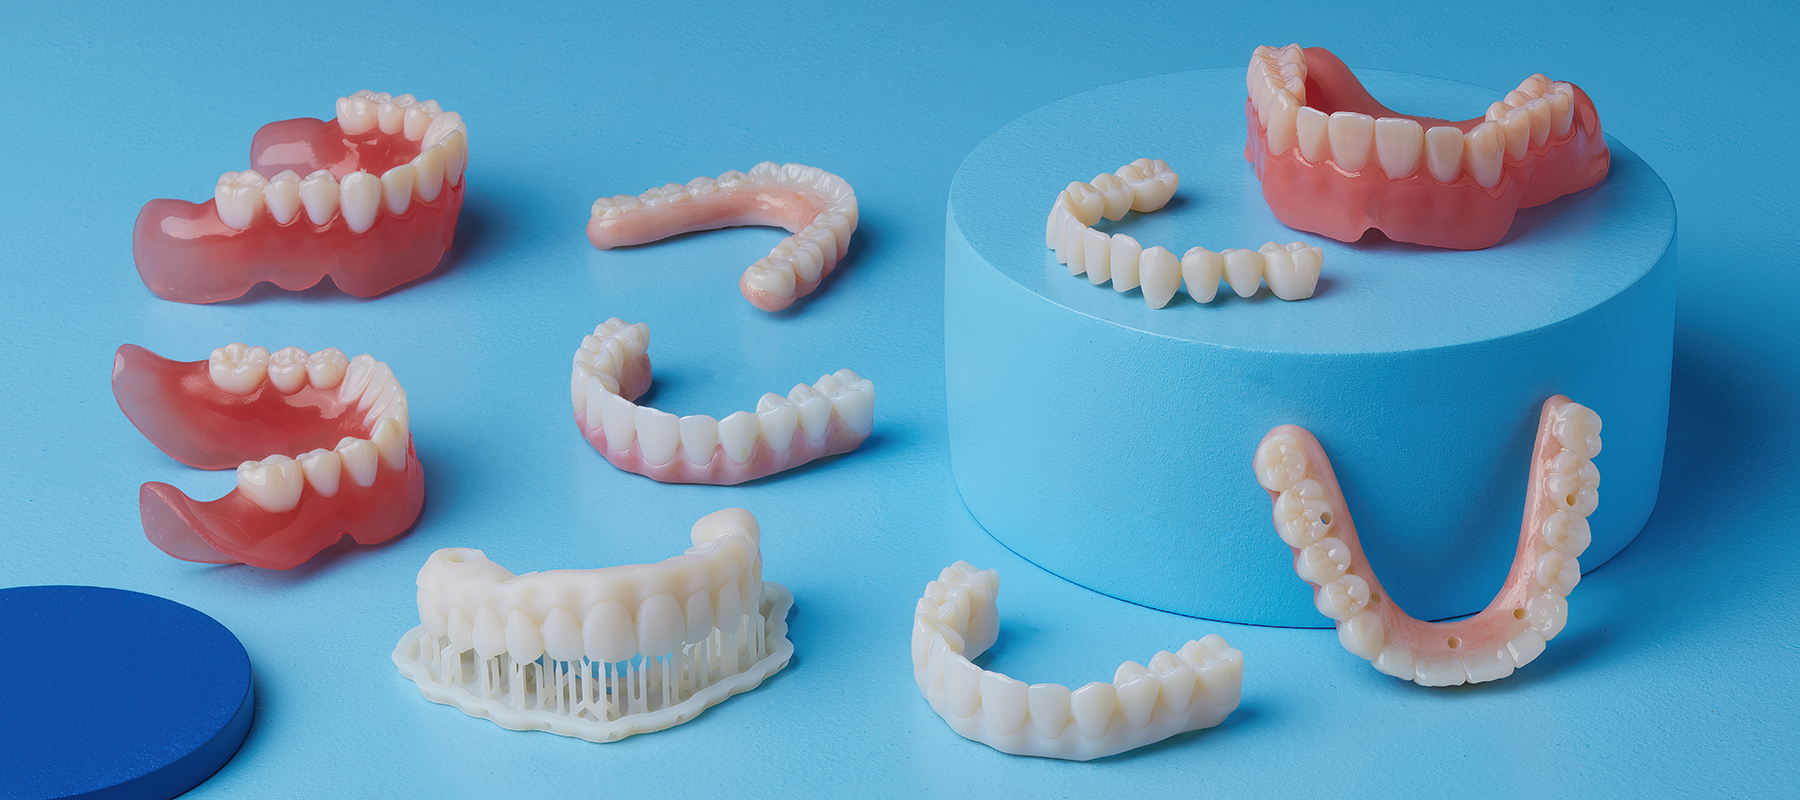 Formlabs Premium Teeth Resin | Image Credit: © Formlabs